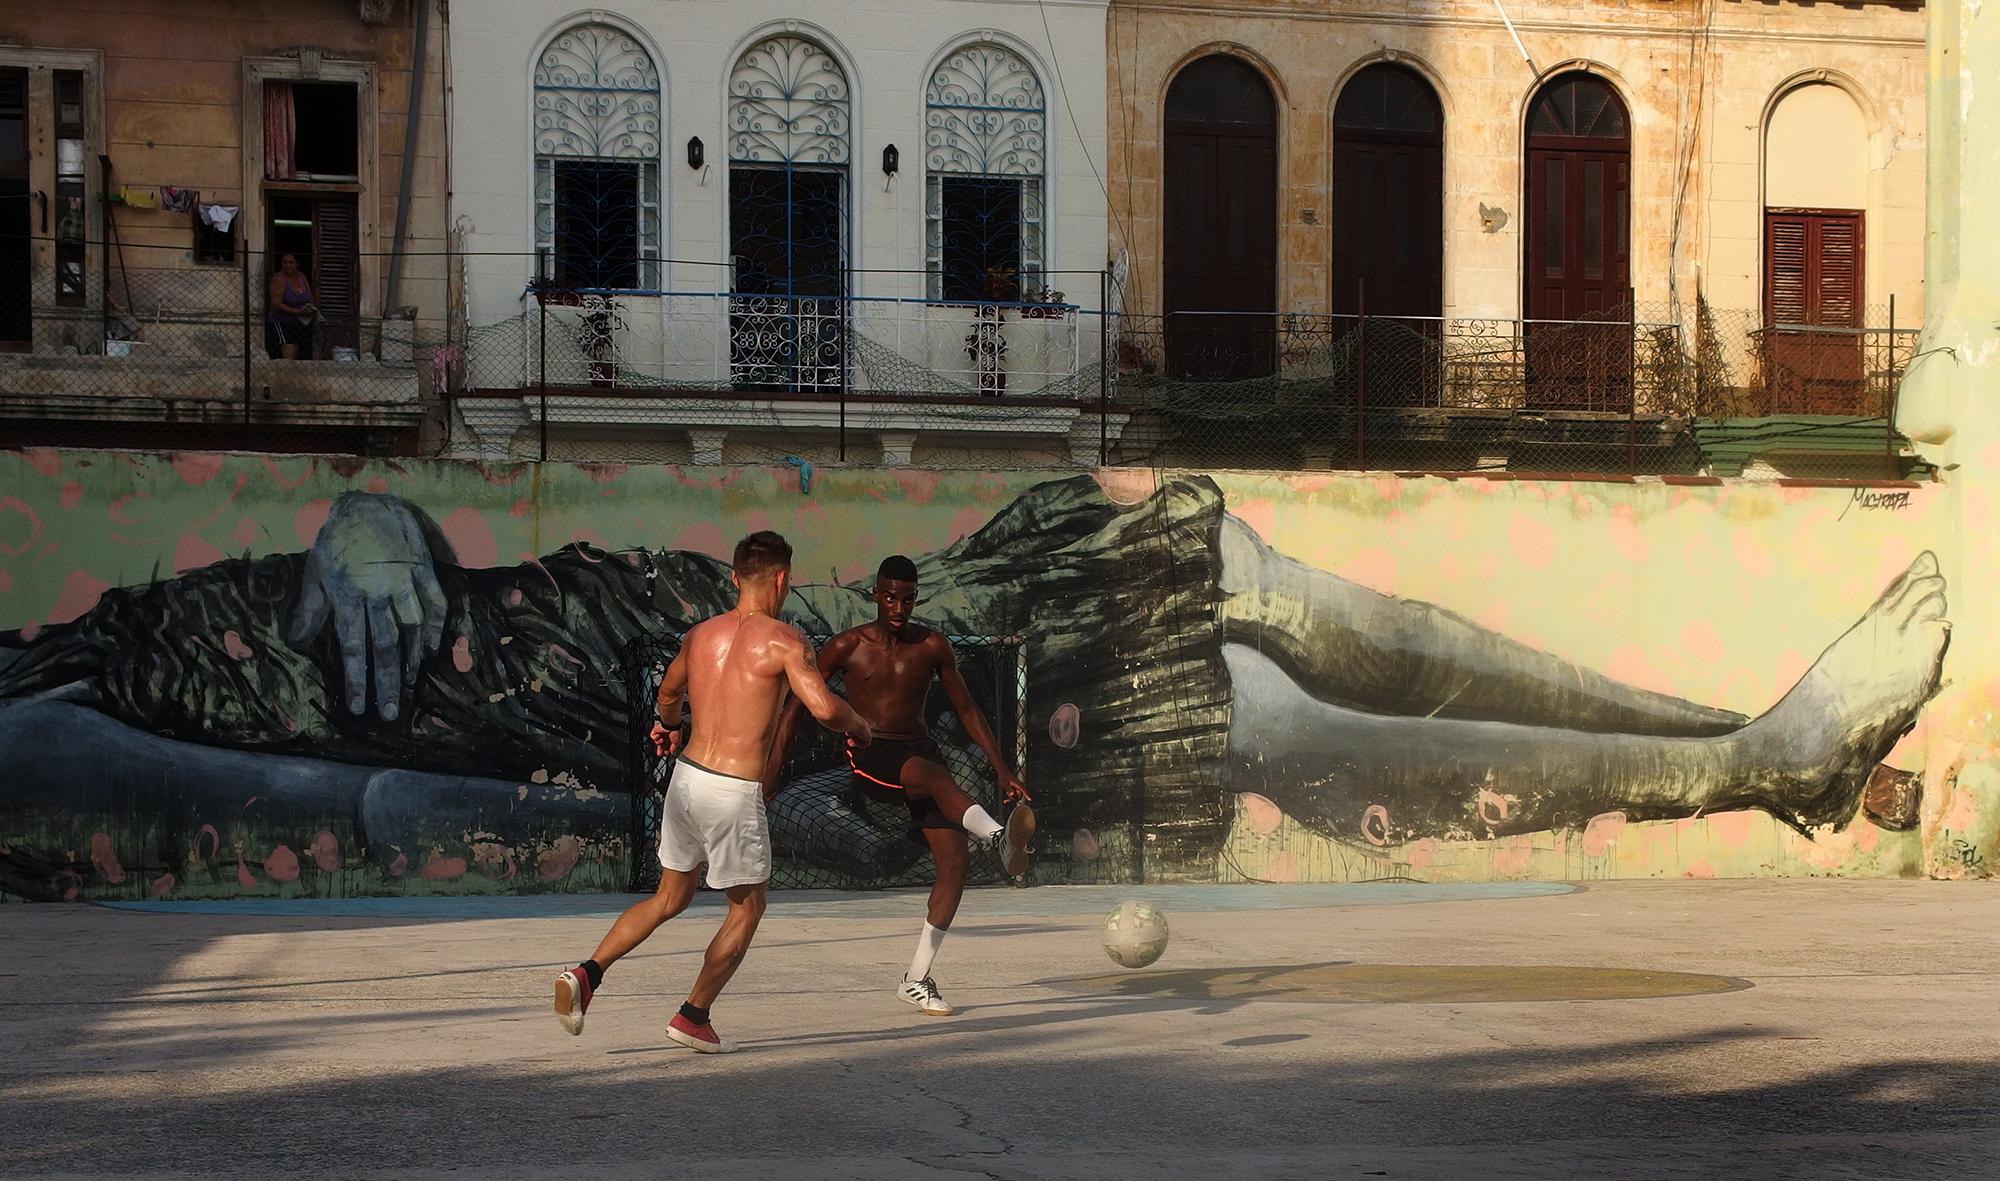 El joven que patea la pelota es Javier Estrada, de 23 años. Barrio Jesús María, La Habana.